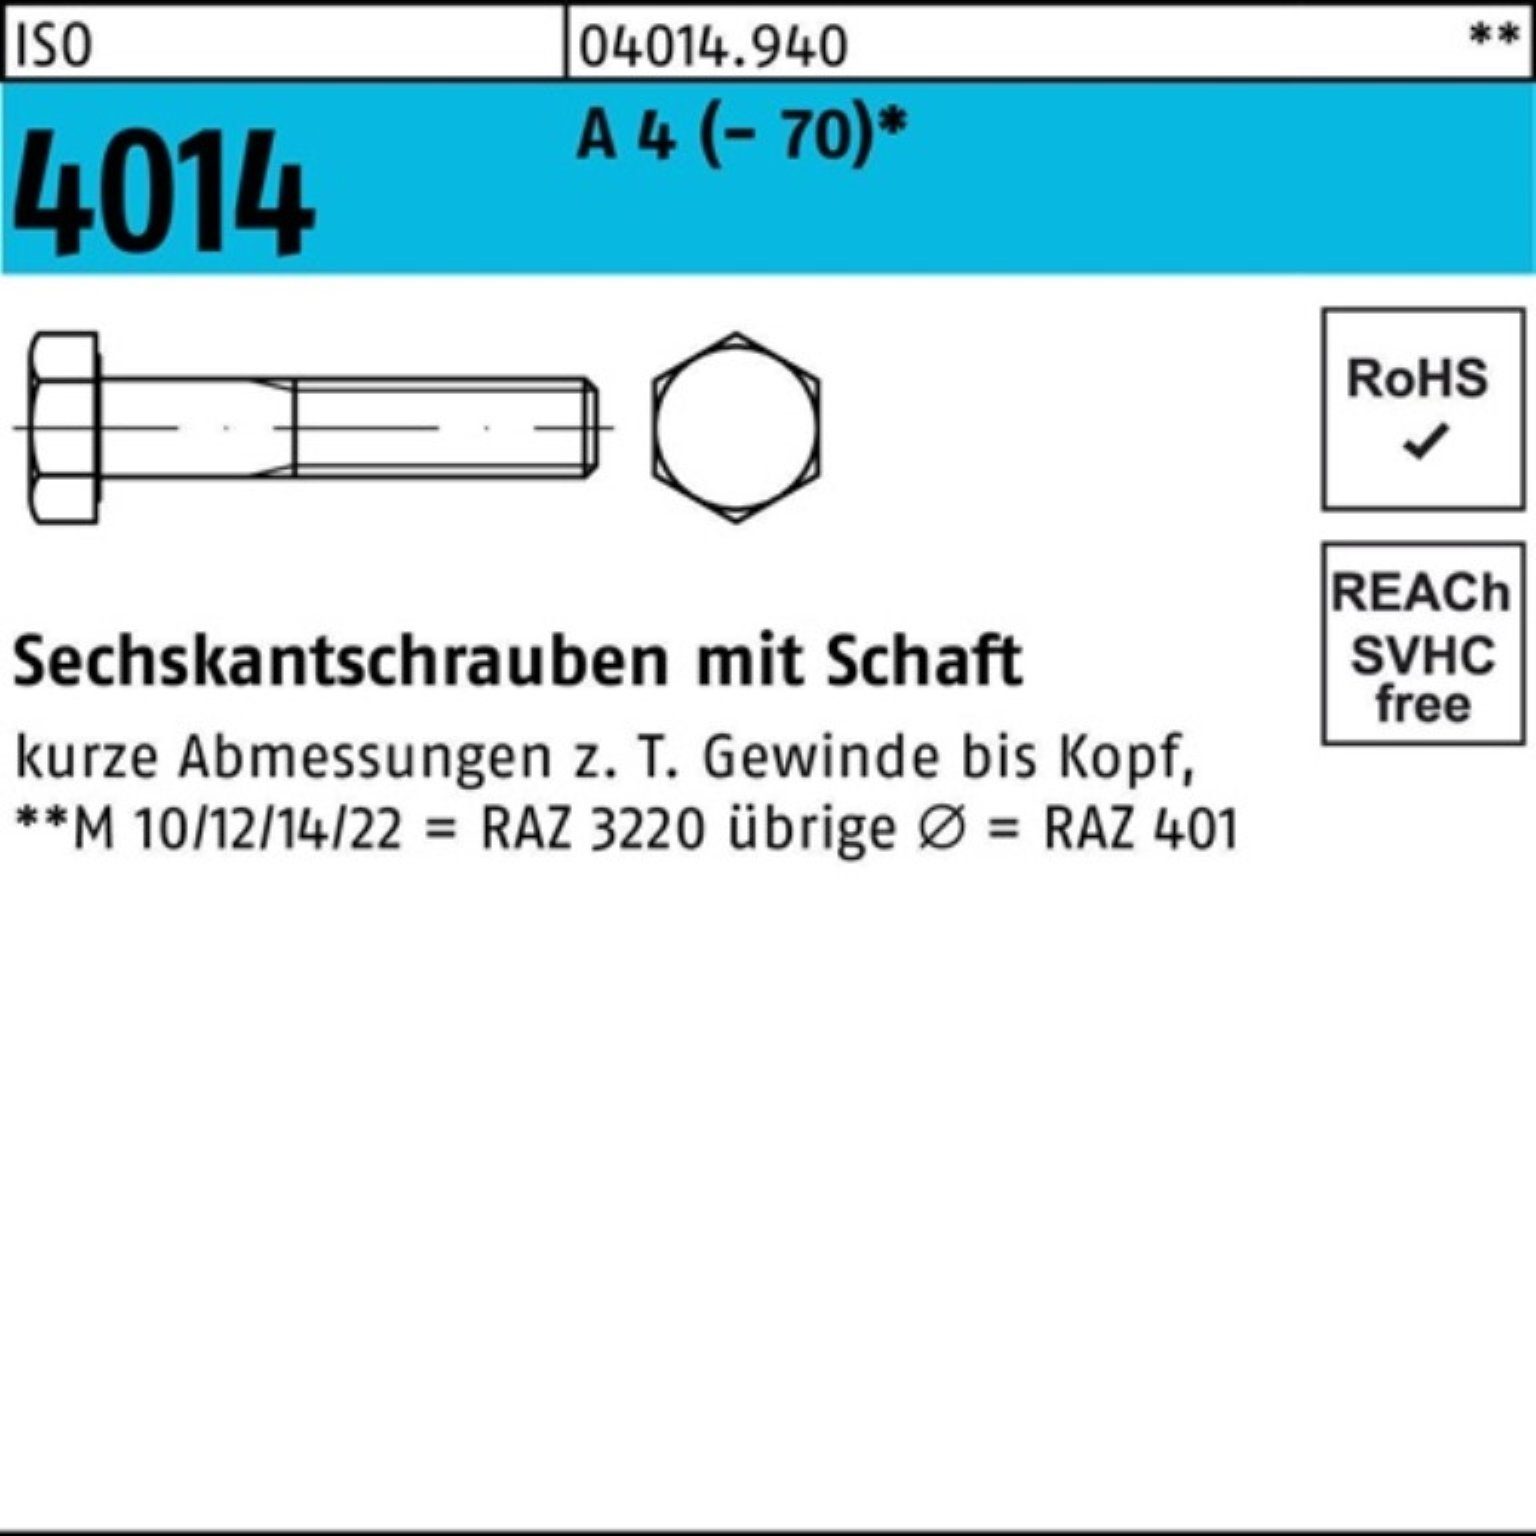 A Sechskantschraube 100er Schaft M20x 4014 Pack 1 4 300 Sechskantschraube Stück ISO Bufab ISO